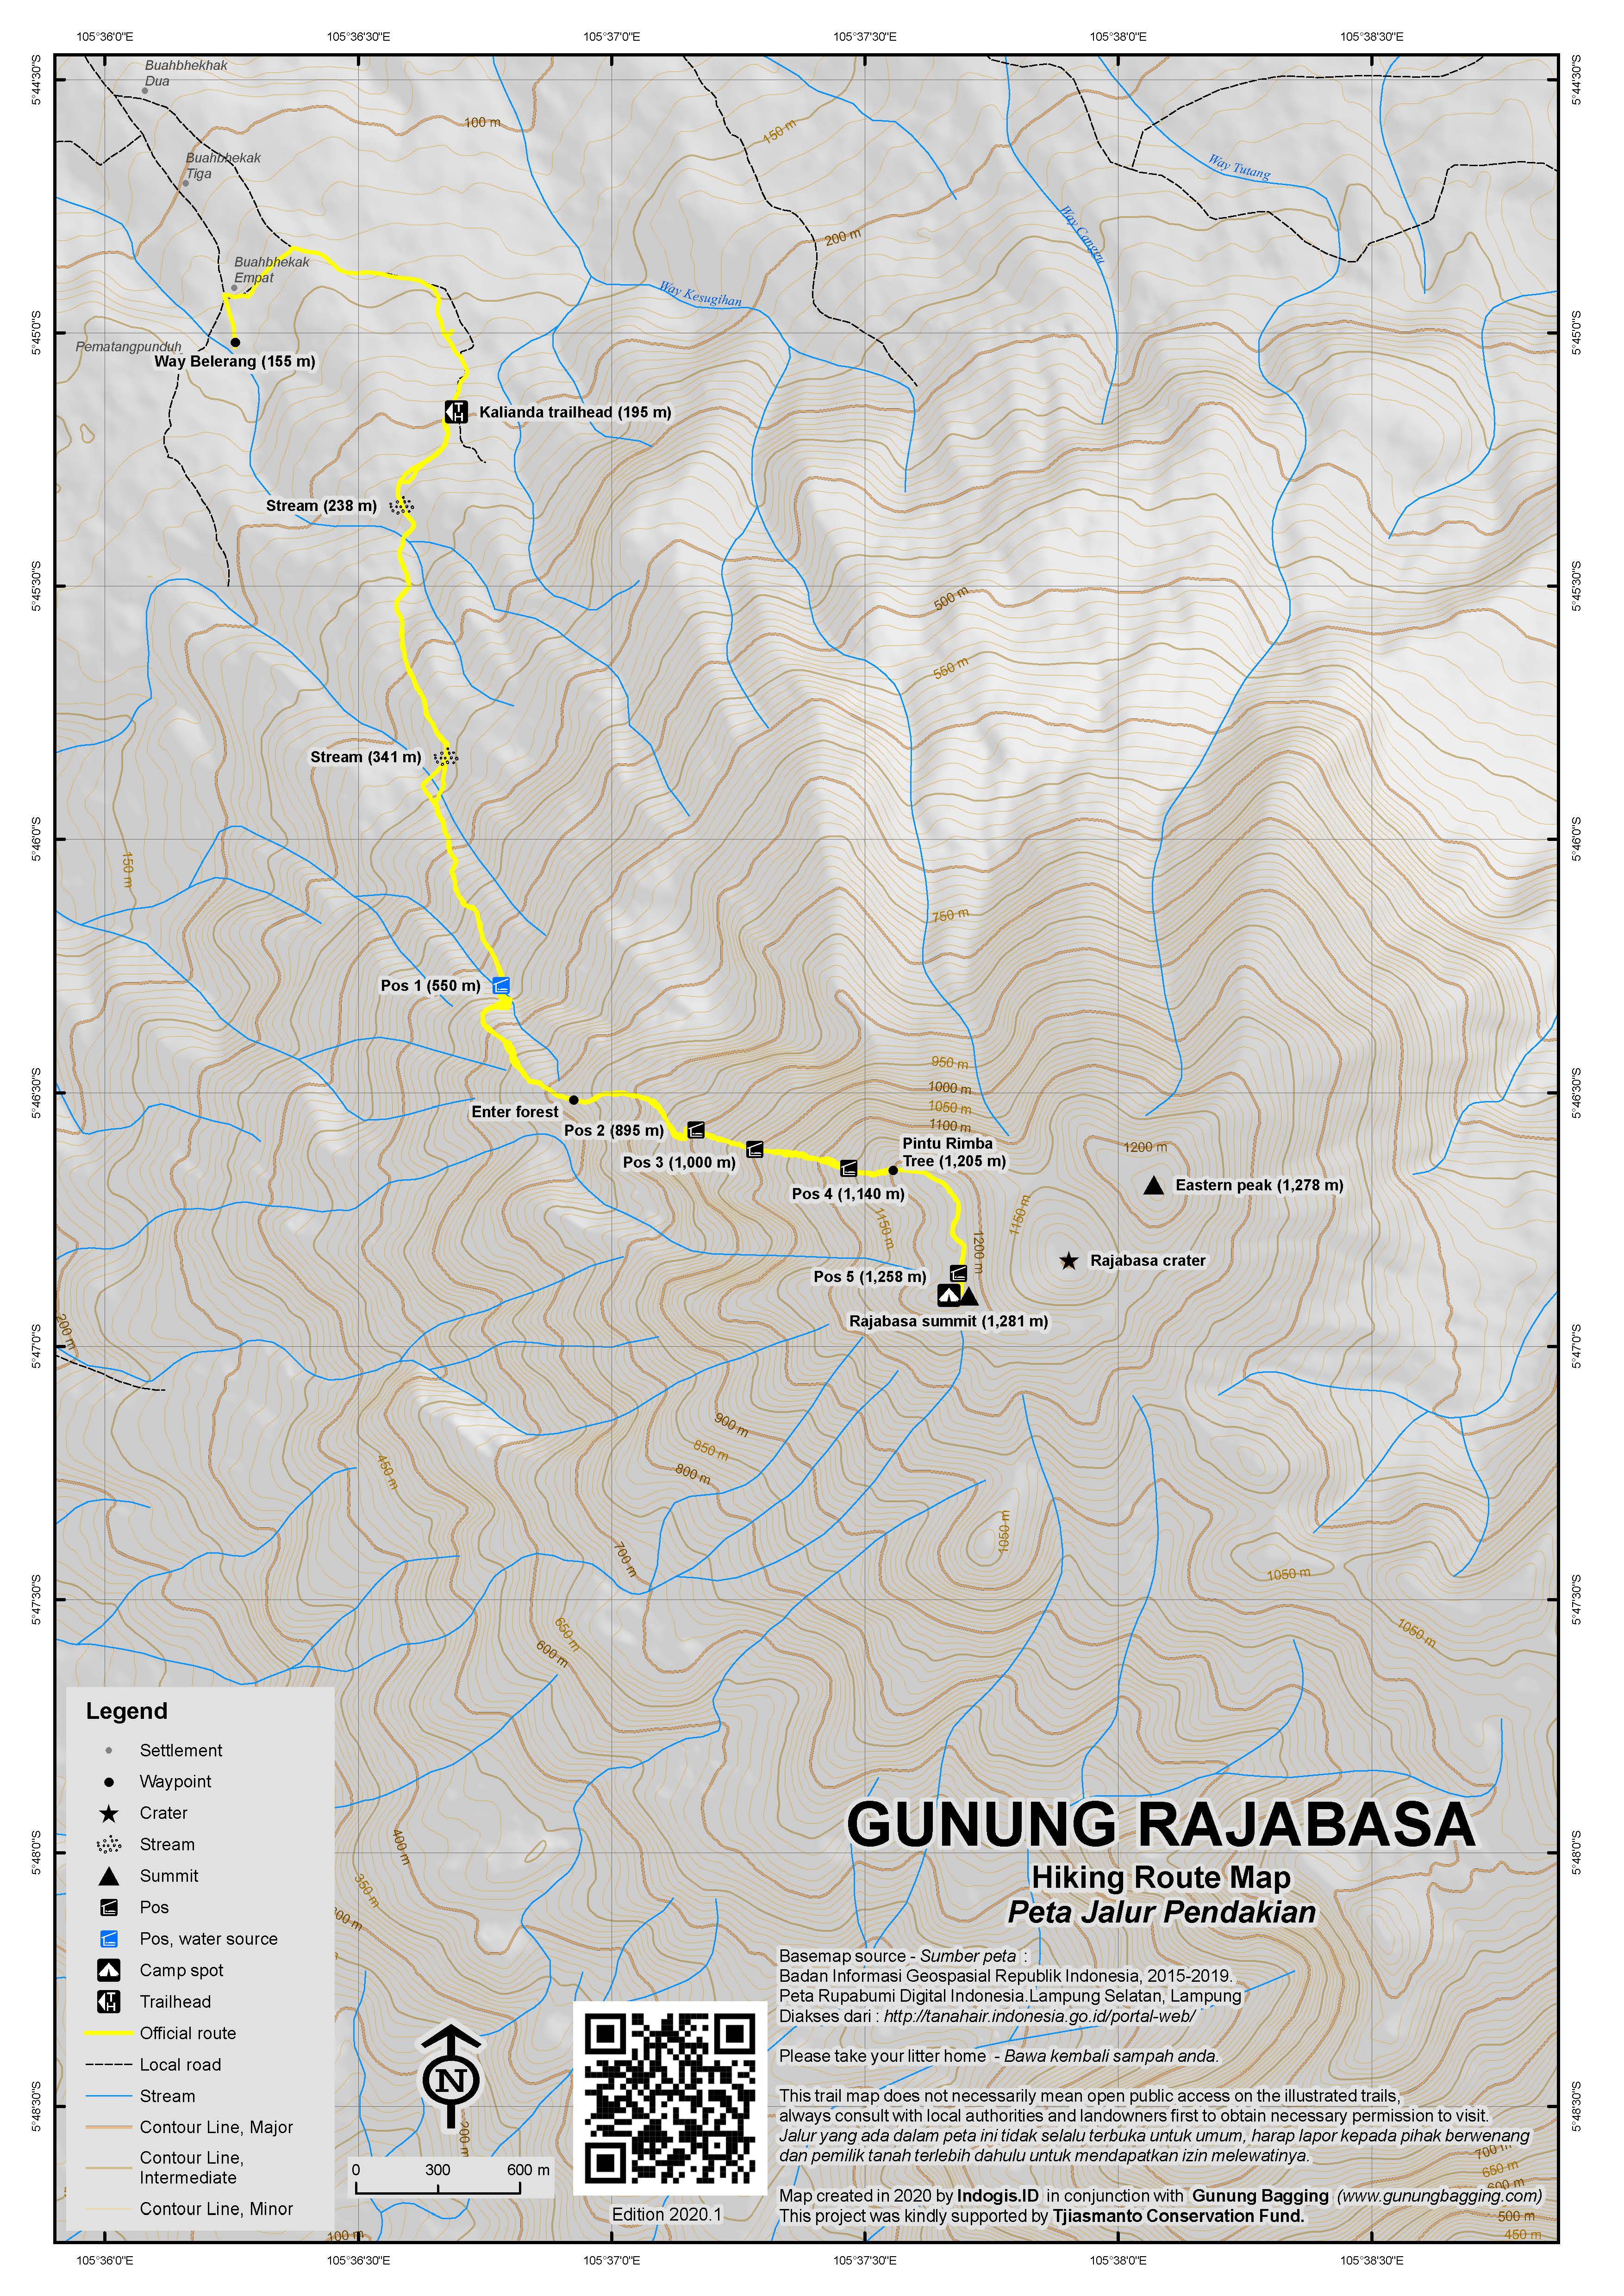 Peta Jalur Pendakian Gunung Rajabasa